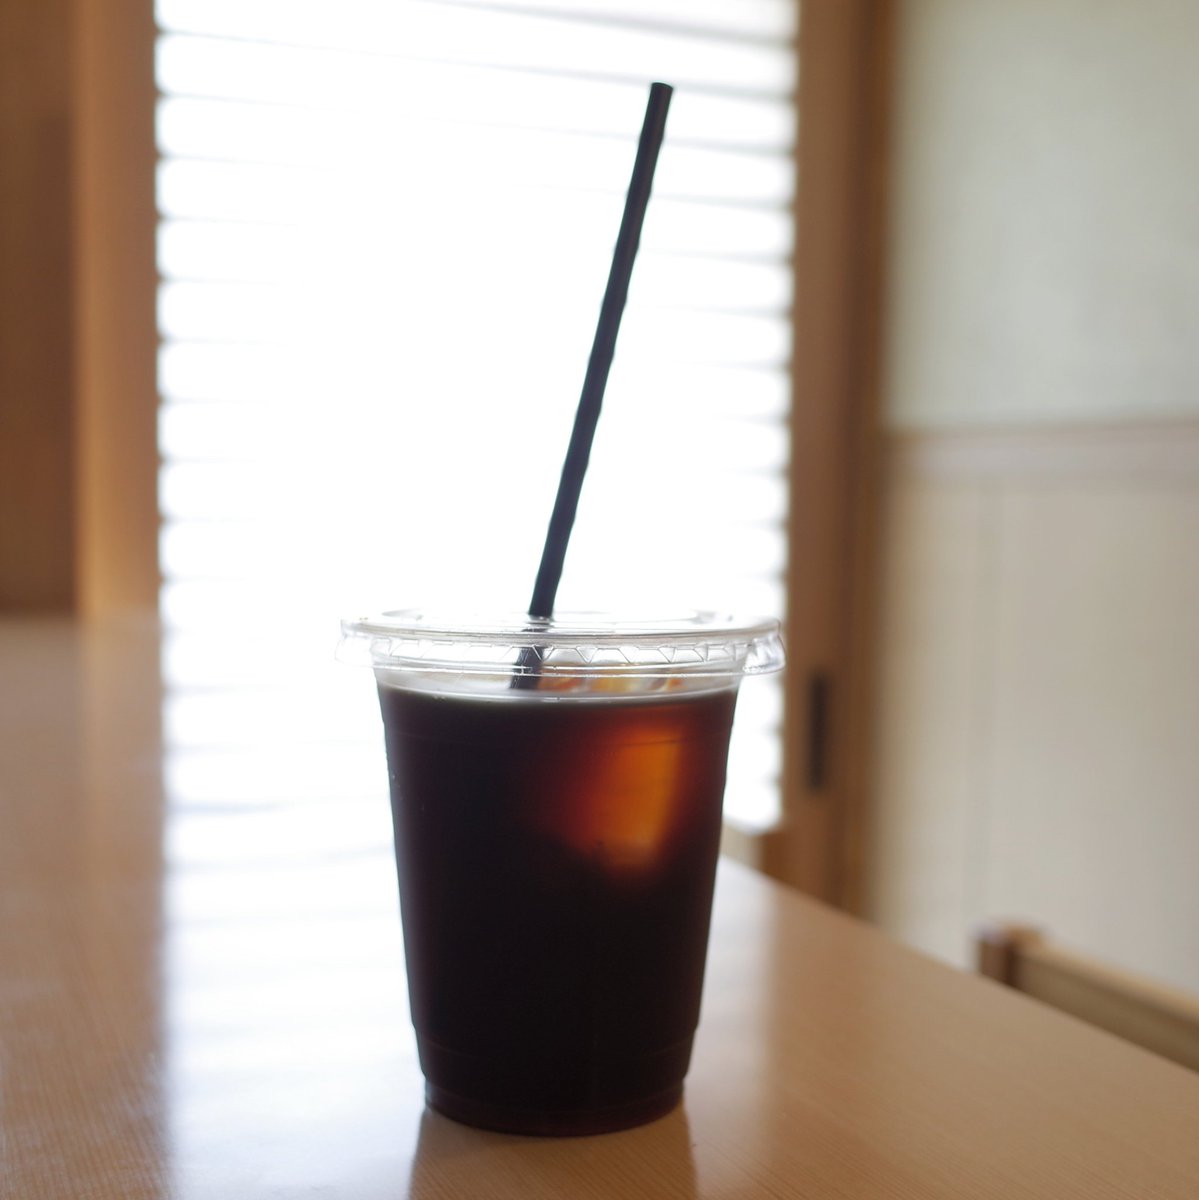 ちどり珈琲 Plovercoffee Auf Twitter テイクアウトのアイスコーヒーは大きな氷を浮かべてご用意いたします 本日はグァテマラブレンドです 向島 浅草 Asakusa コーヒー Coffee アイスコーヒー飲みたい T Co Oti1eidpsn Twitter